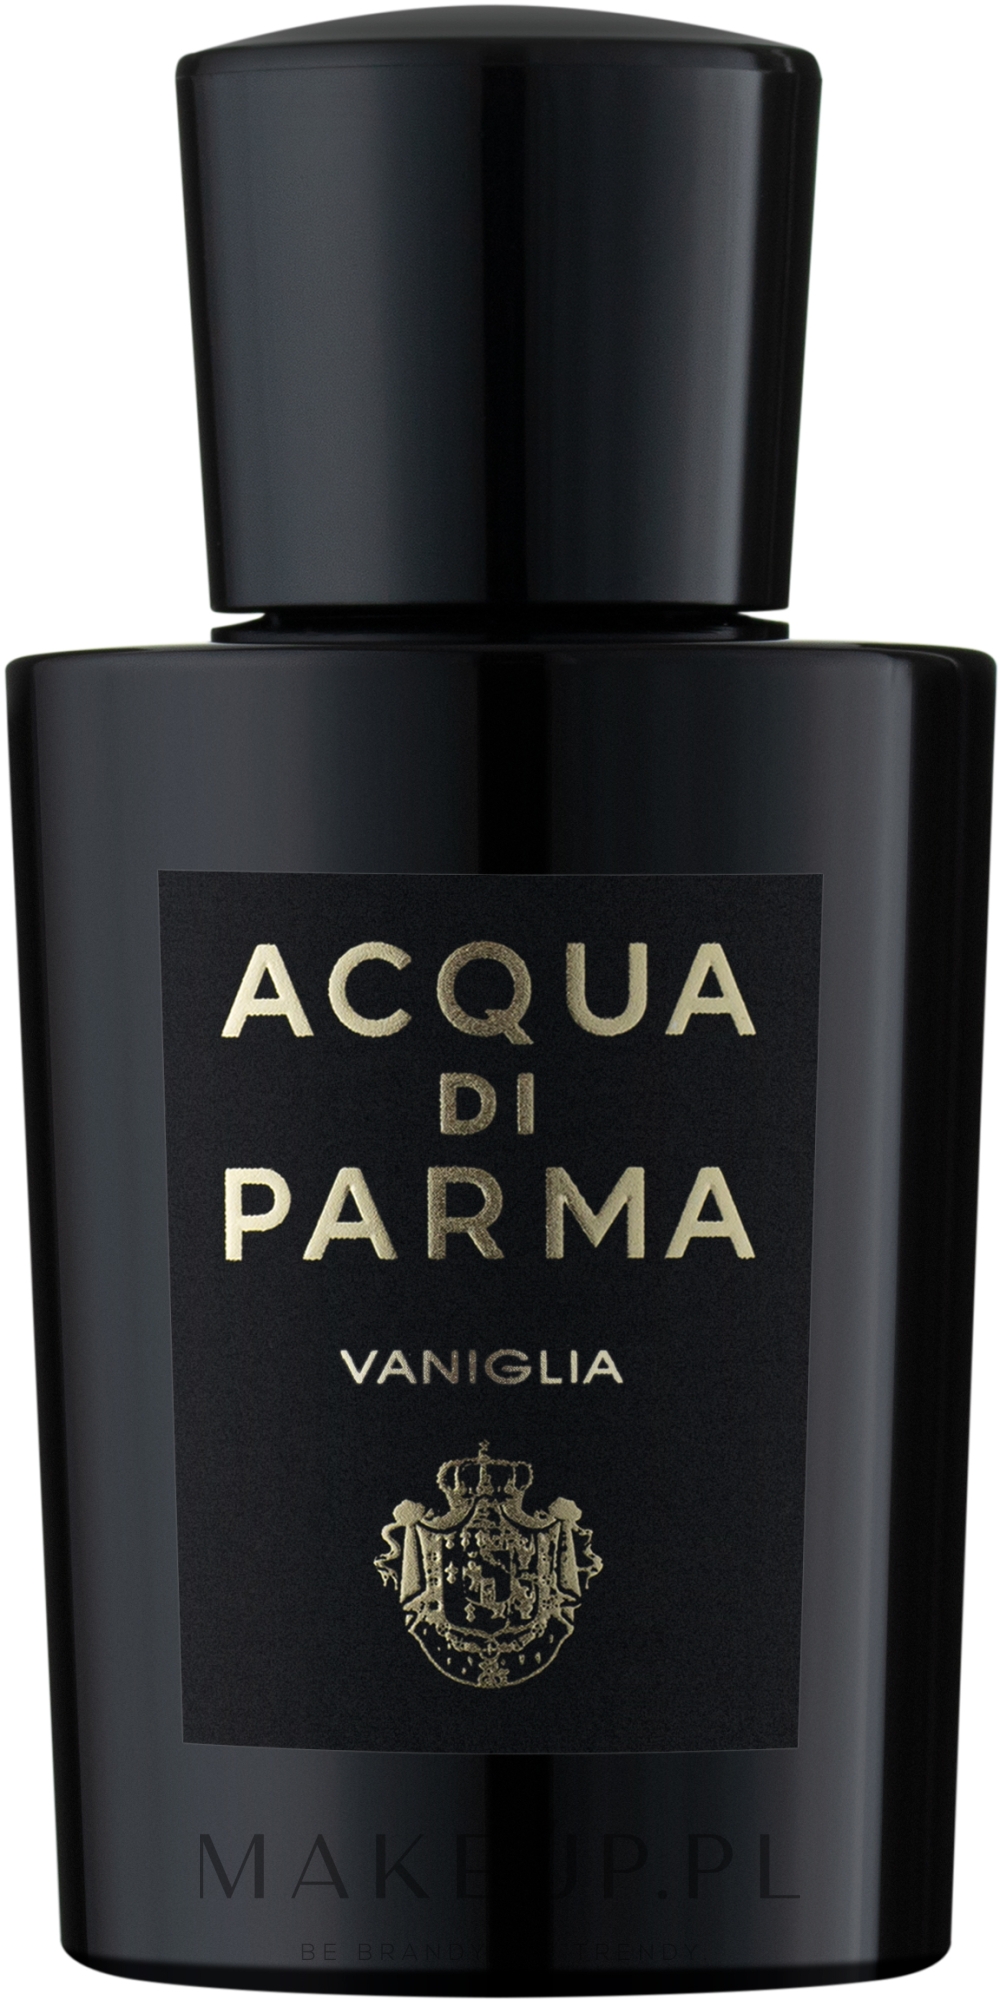 acqua di parma vaniglia woda perfumowana 100 ml  